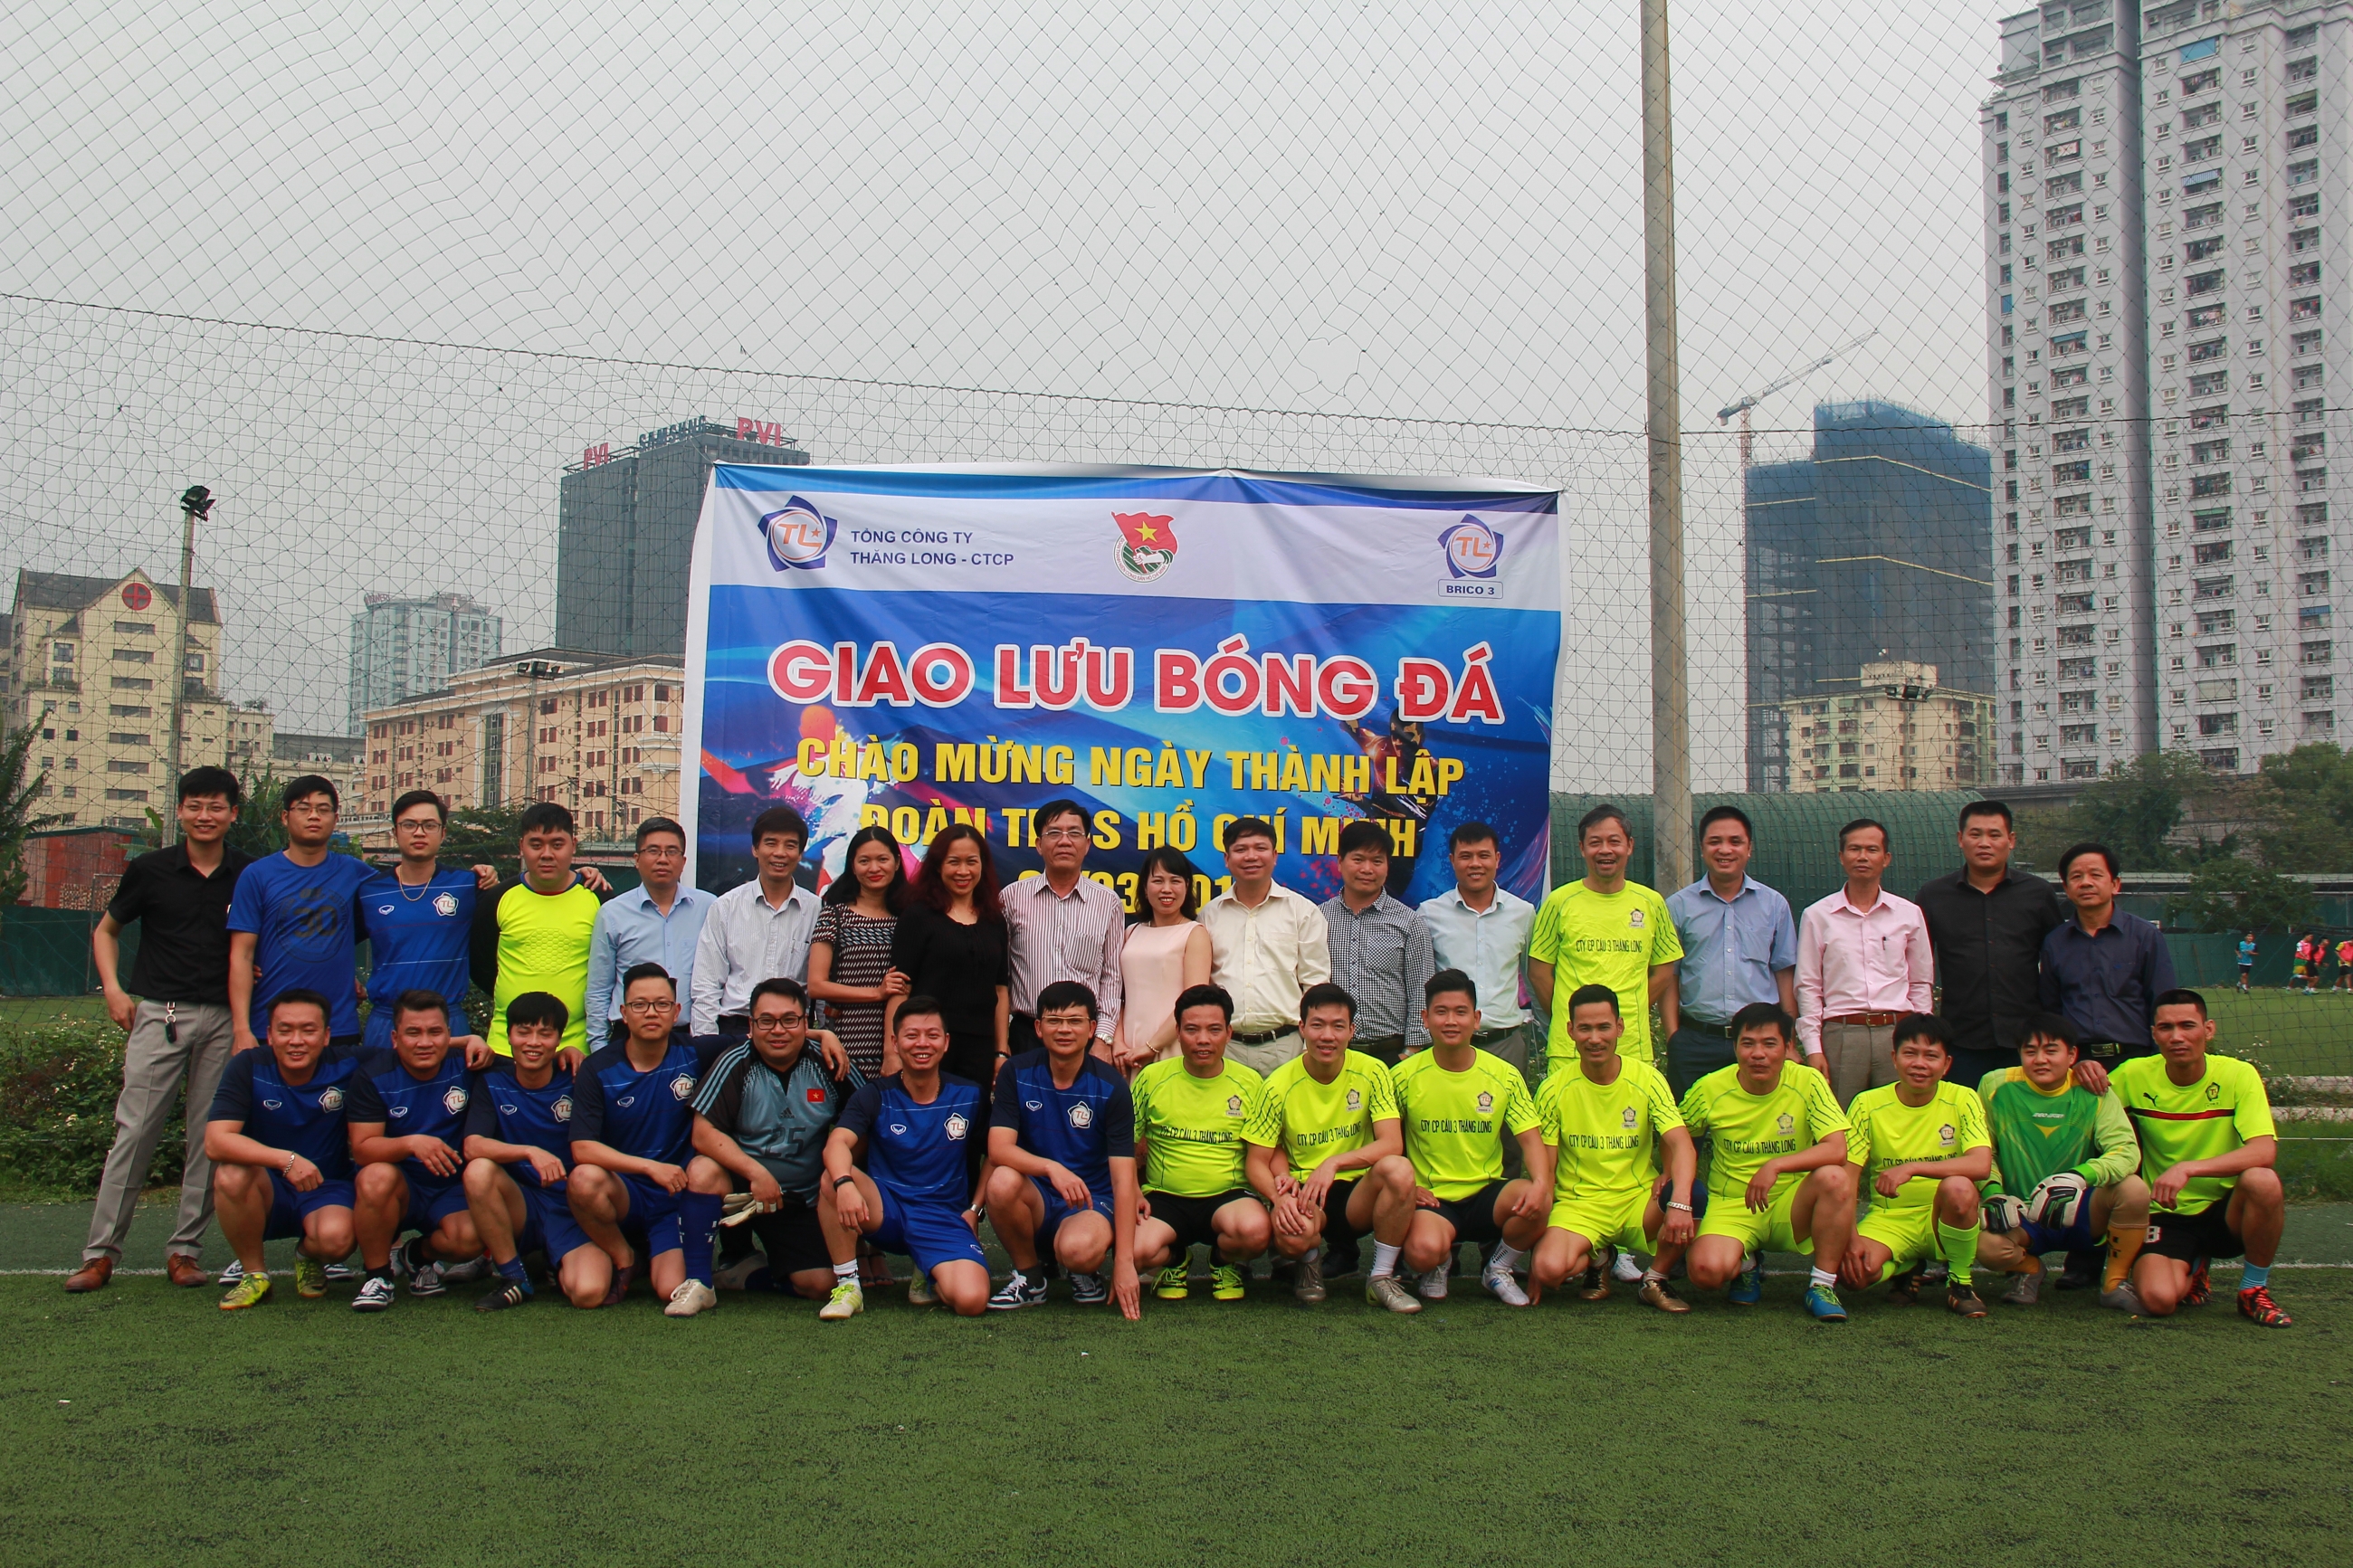 Giao hữu bóng đá chào mừng ngày thành lập Đoàn TNCS Hồ Chí Minh 26/03 và 45 năm thành lập Tổng công ty